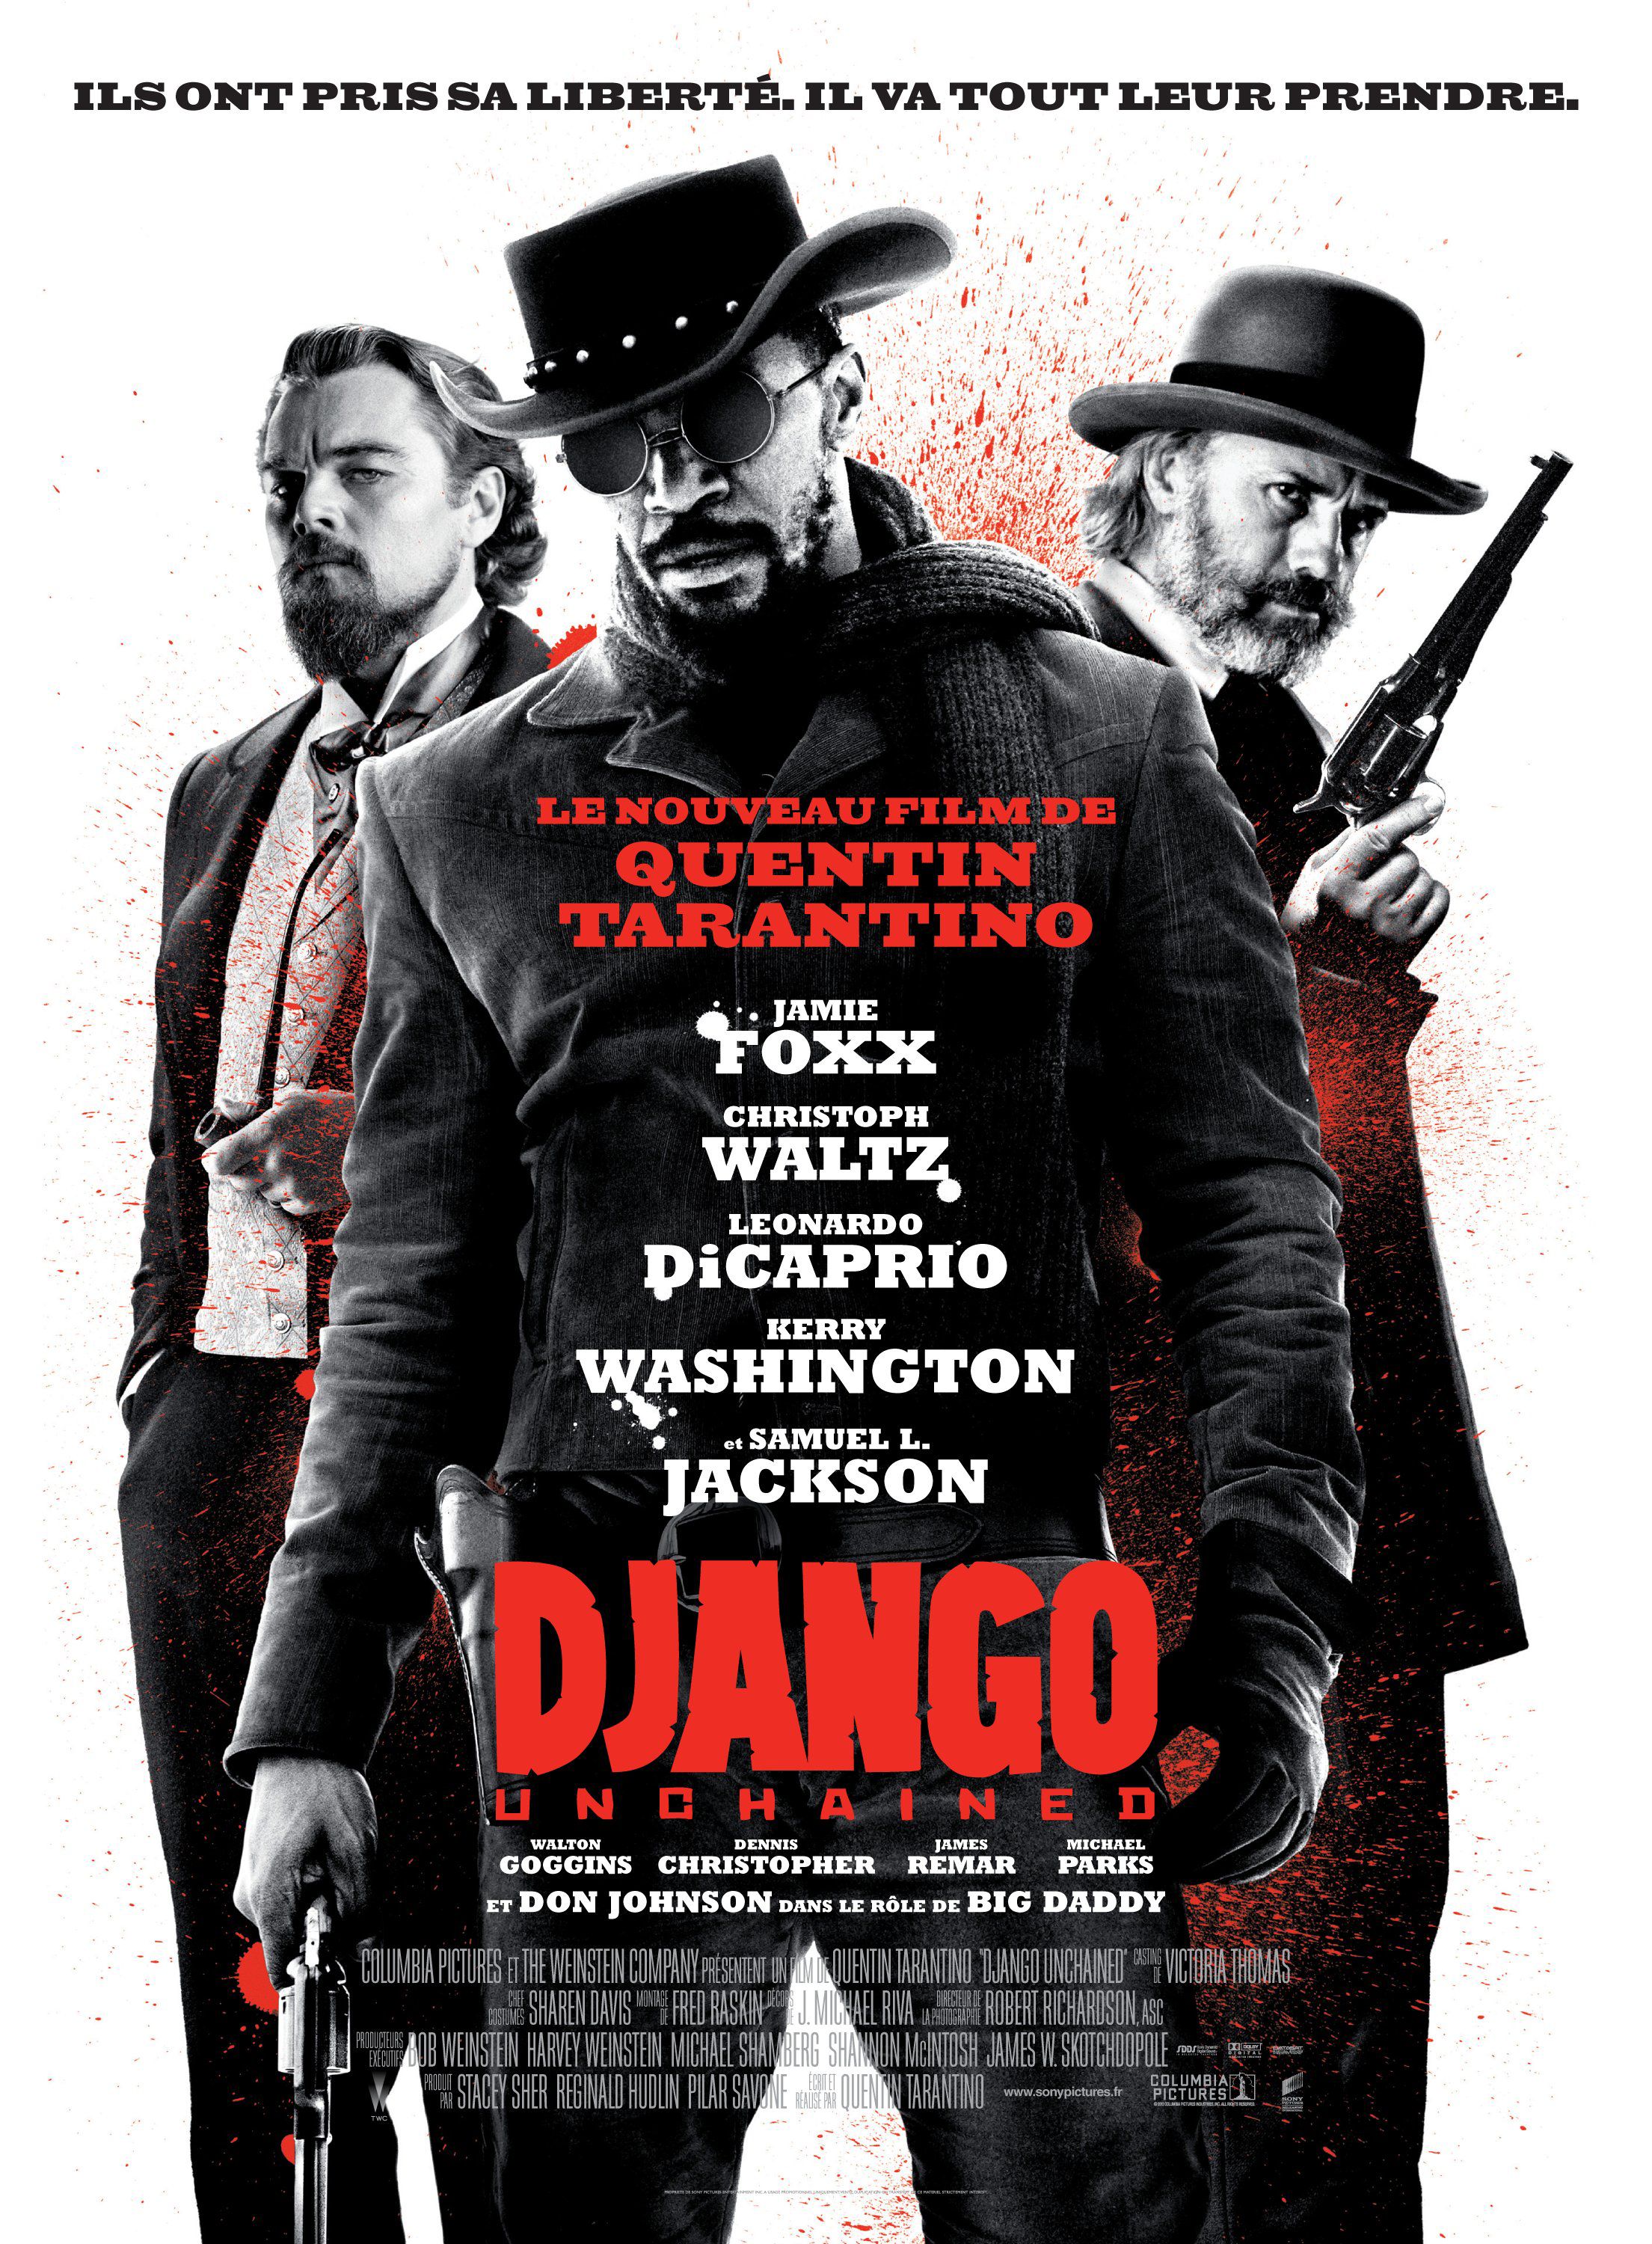 Django как переименовать проект